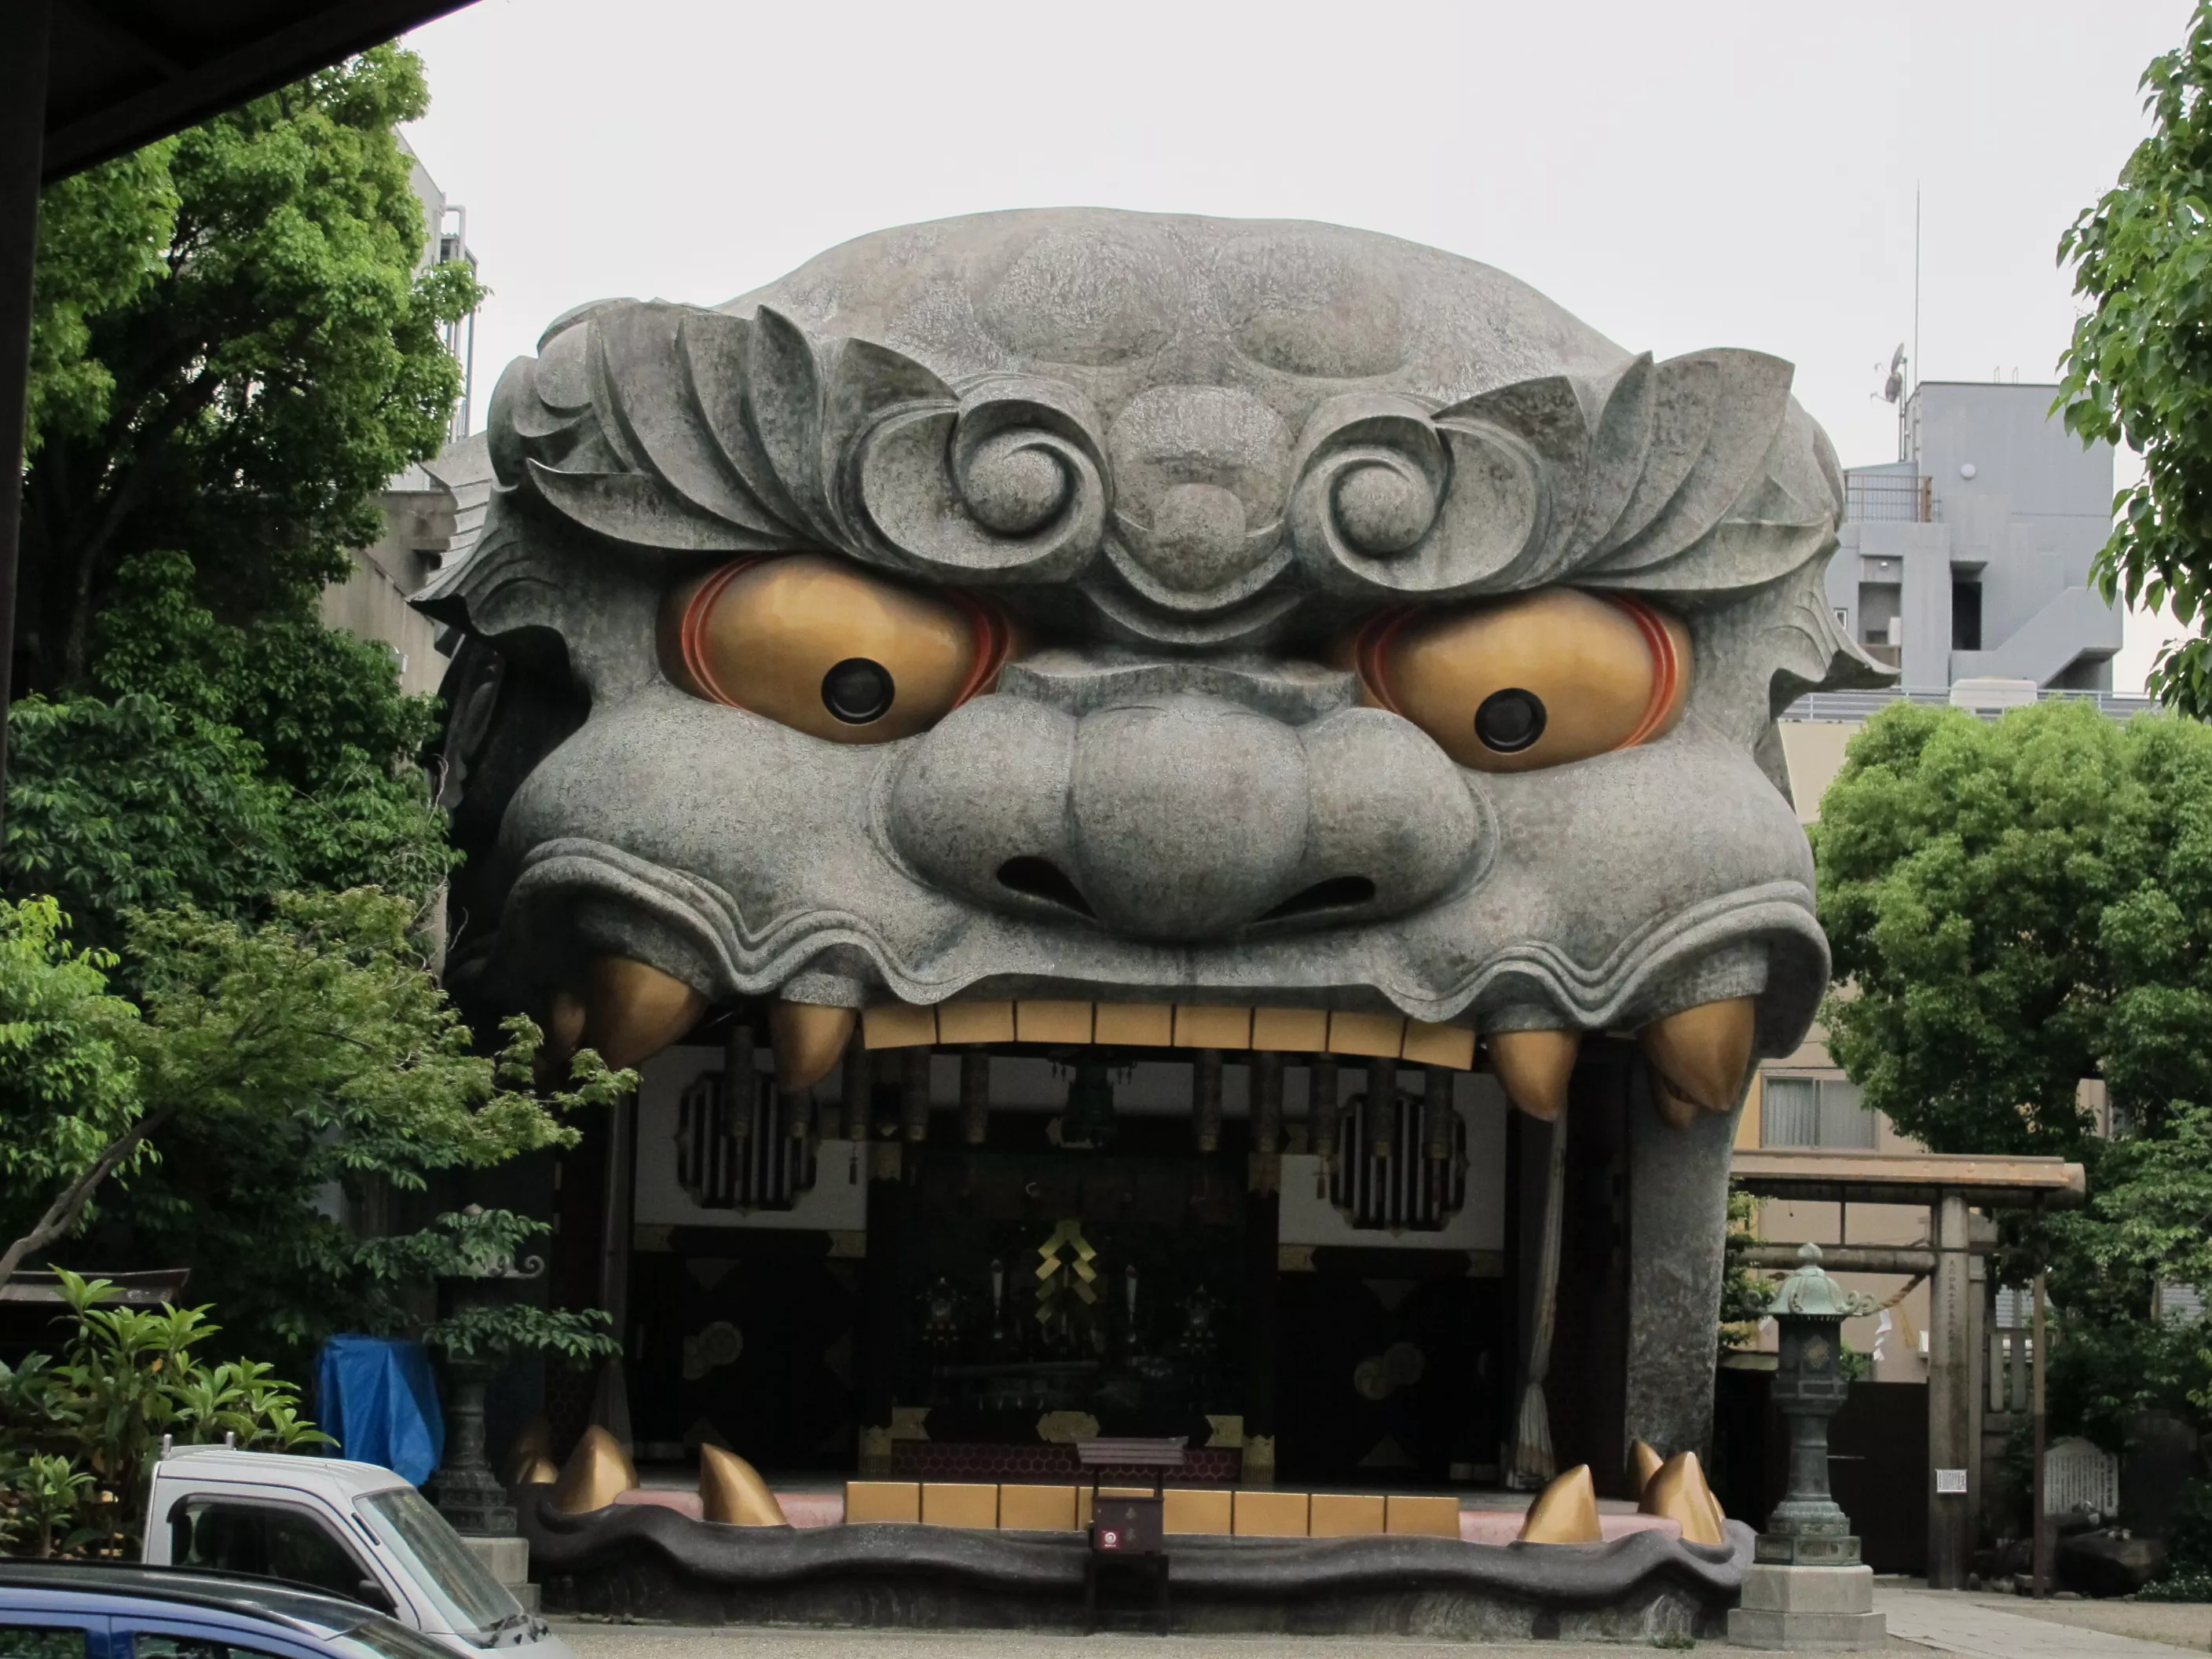 Namba Yasaka Shrine in Japan, East Asia | Architecture - Rated 3.5